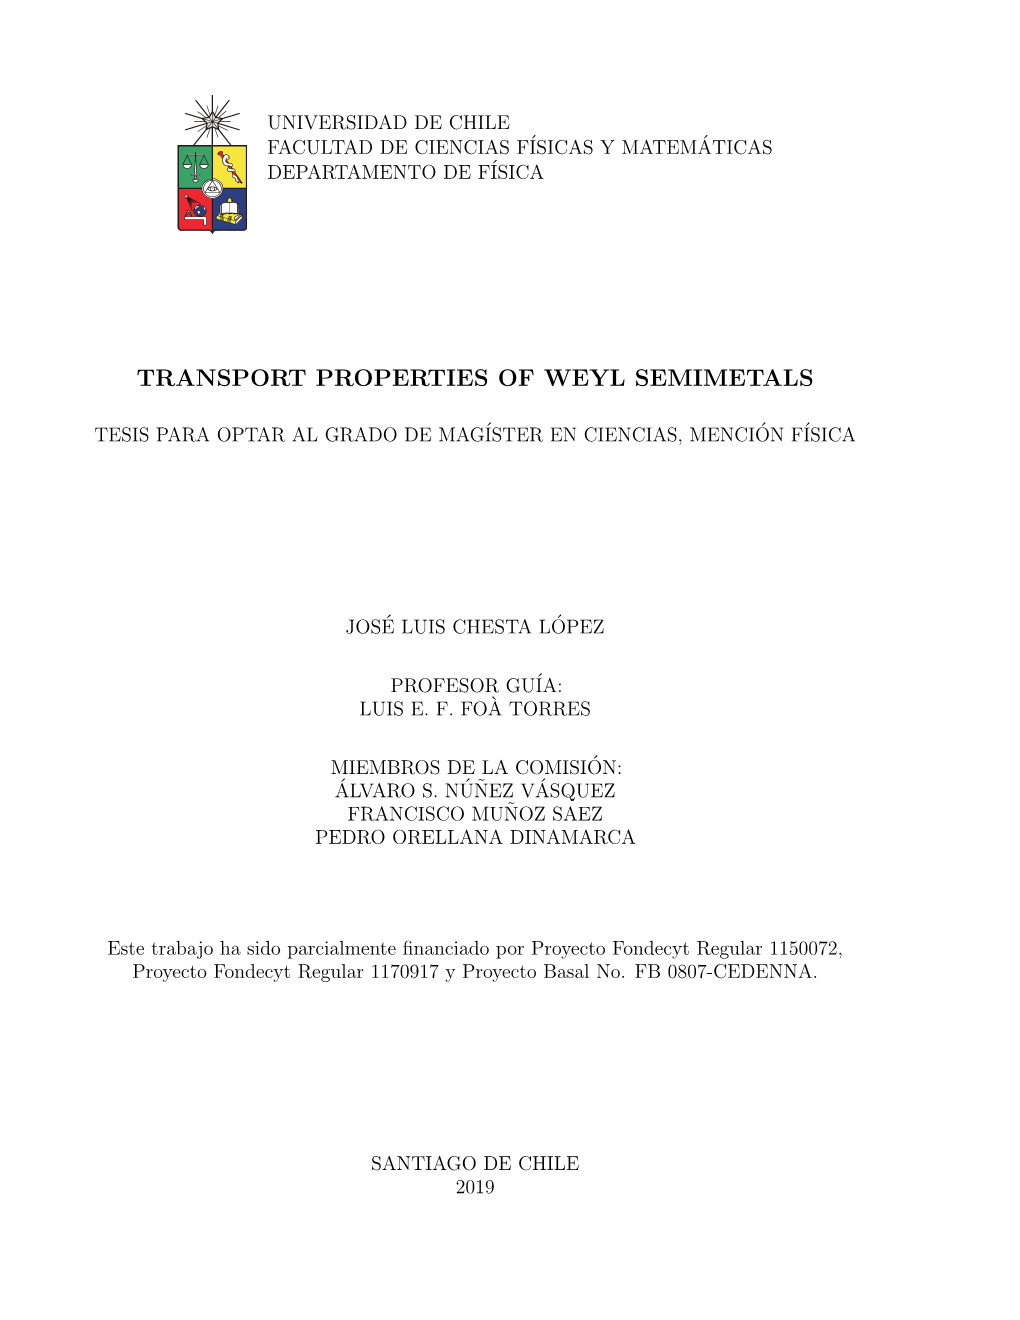 Transport Properties of Weyl Semimetals